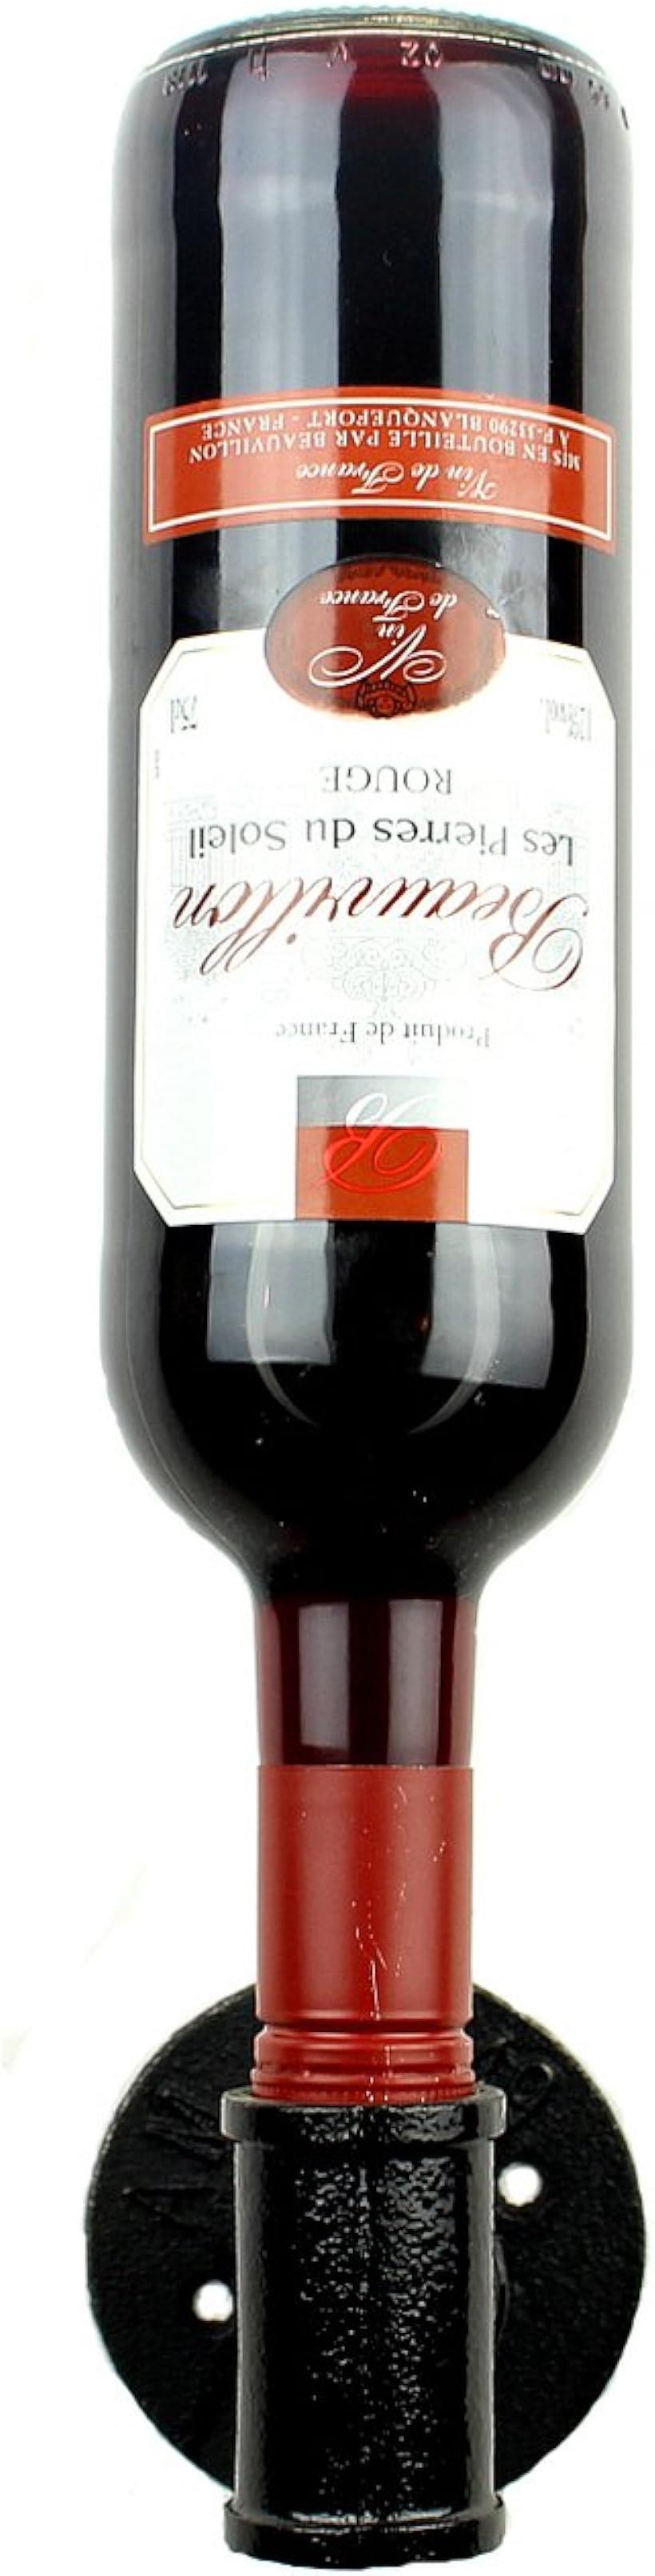 パイプ型 壁掛け ワインホルダー ラック シャンパン ボトル ハンガー ケース インテリア W39( ブラック)